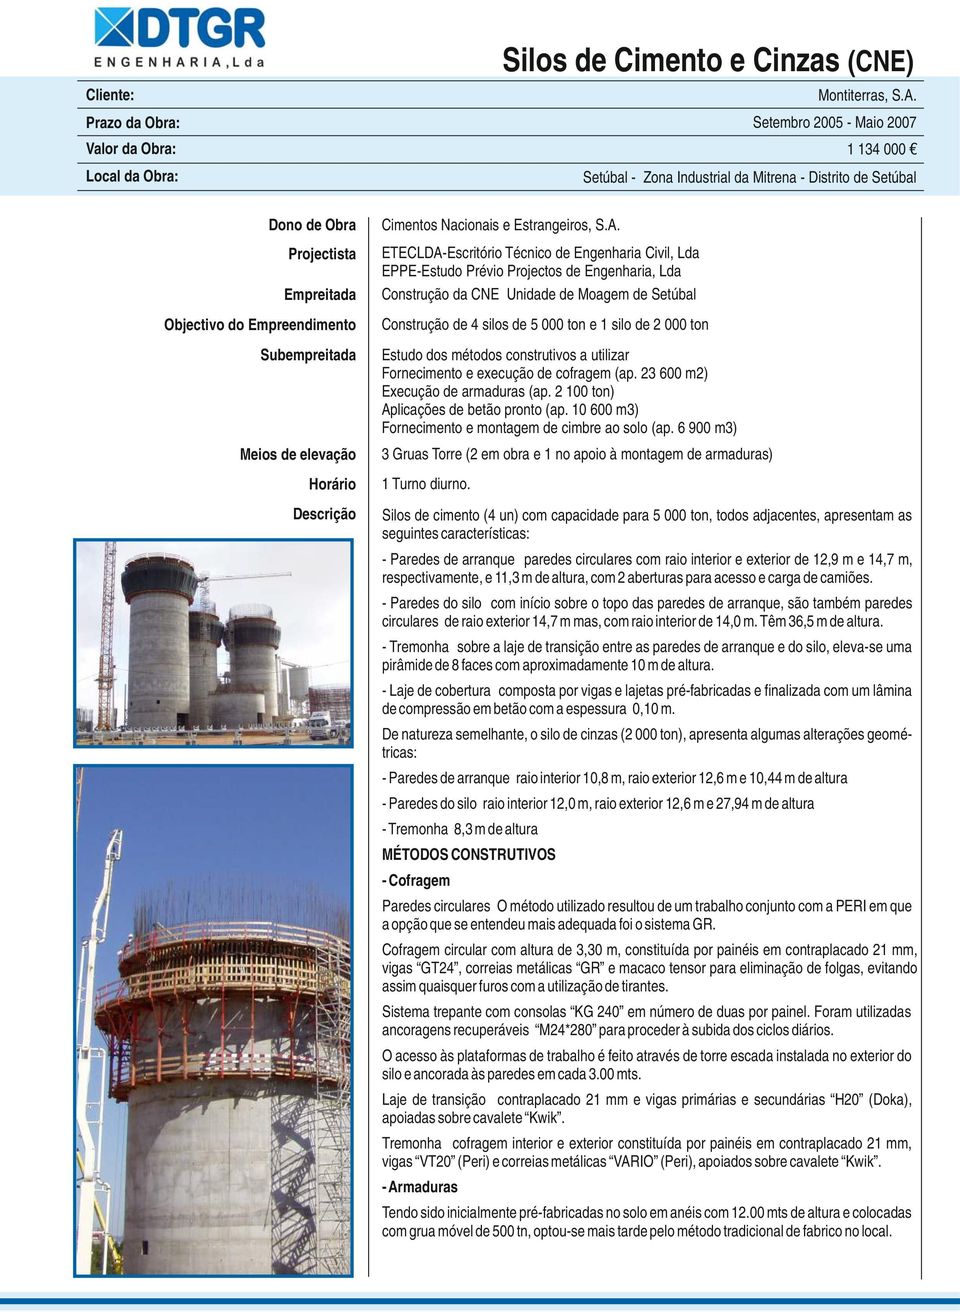 ETECLDA-Escritório Técnico de Engenharia Civil, Lda EPPE-Estudo Prévio Projectos de Engenharia, Lda Construção da CNE Unidade de Moagem de Setúbal Construção de 4 silos de 5 000 ton e 1 silo de 2 000